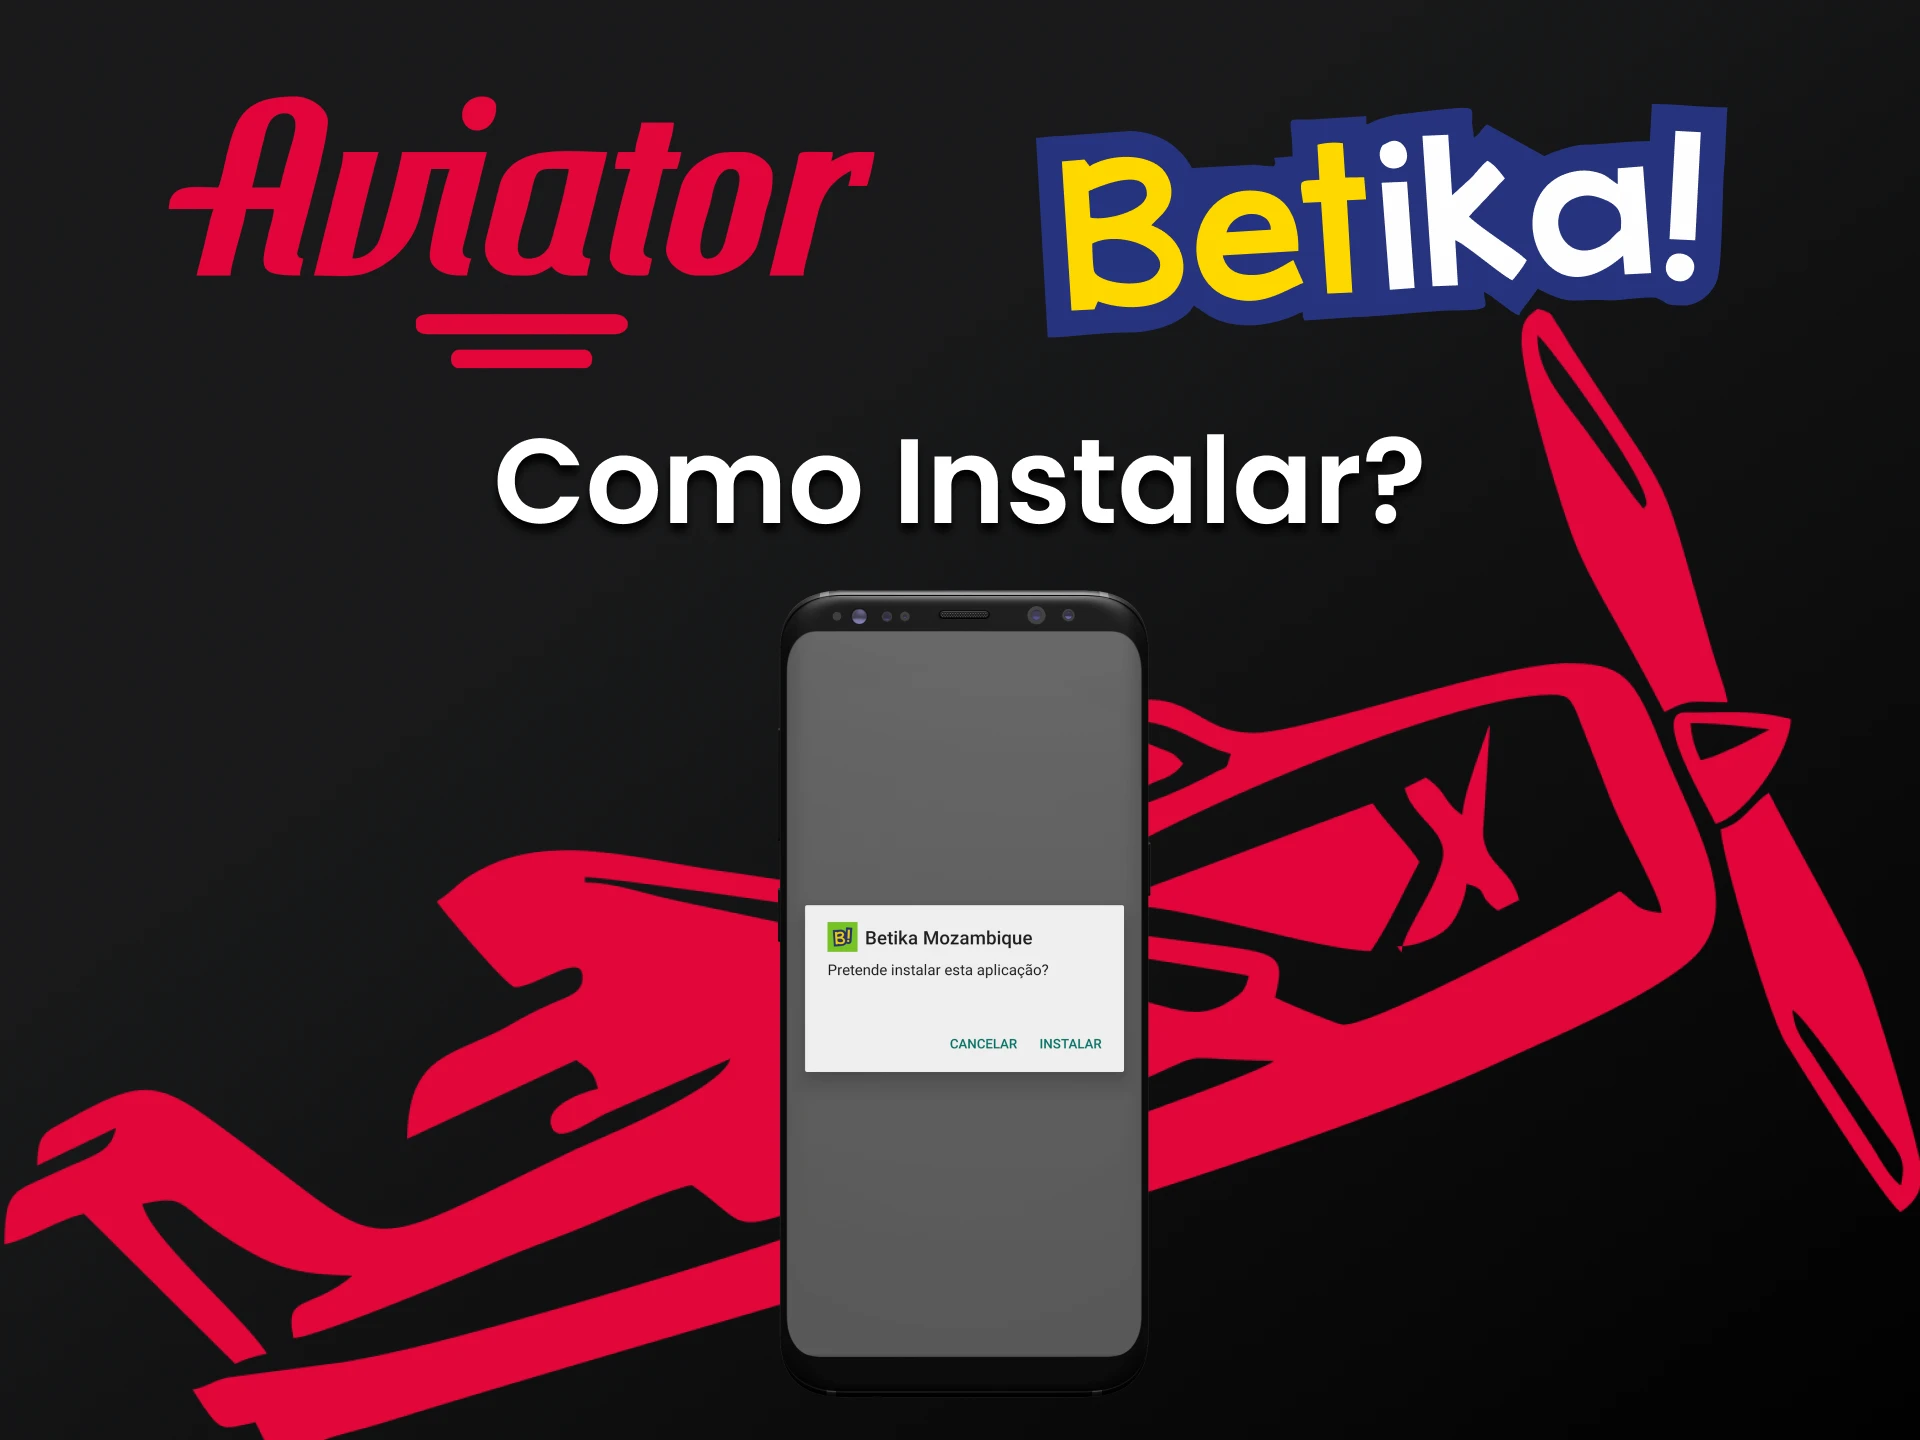 Baixe o aplicativo Betika para jogar Aviator.